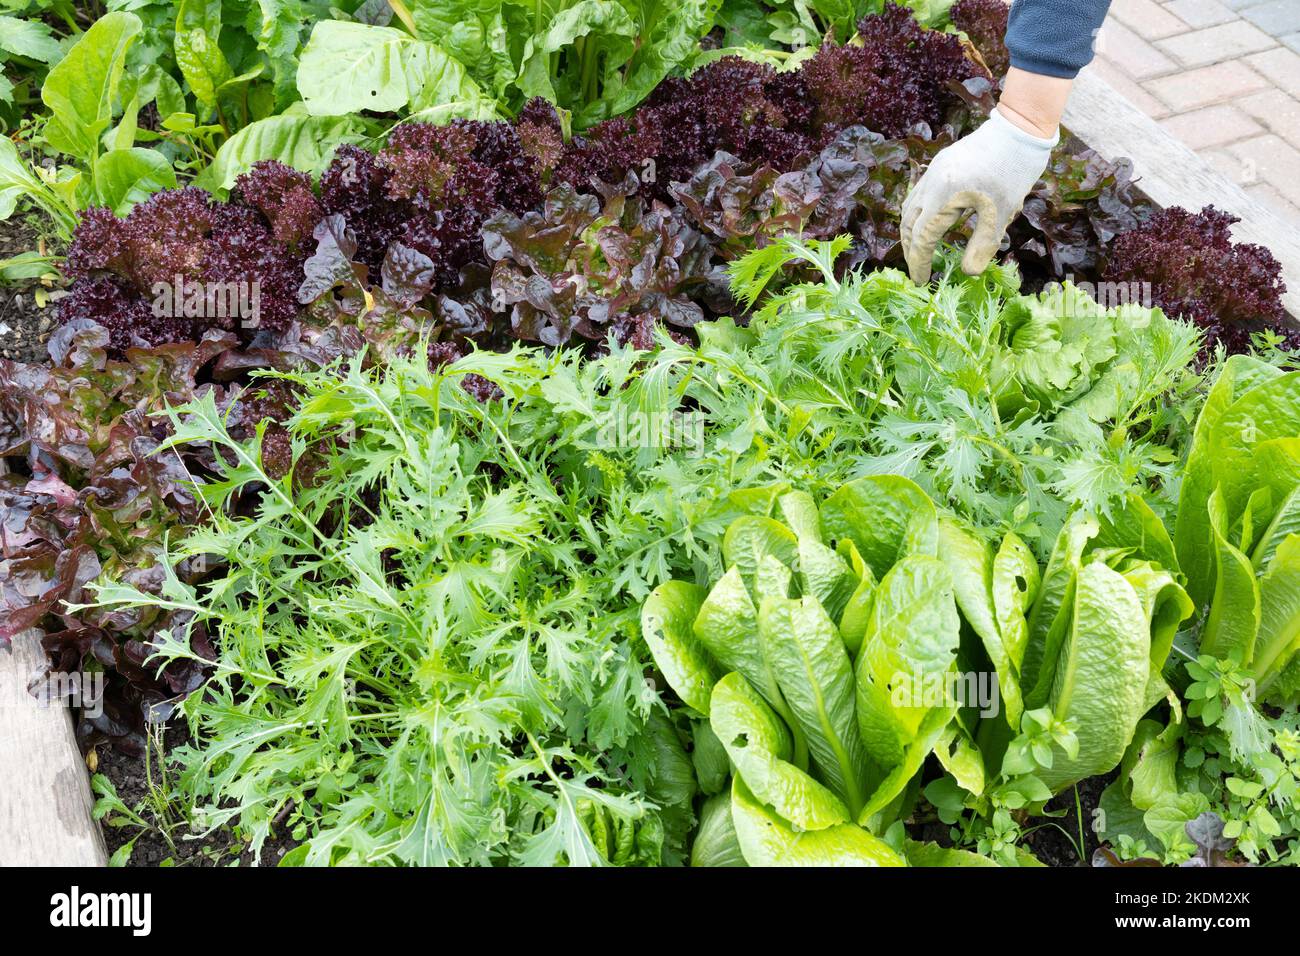 Culture de légumes Grande-Bretagne; Un jardinier cueillant la laitue rouge et verte dans un lit de légumes de jardin, Royaume-Uni Banque D'Images